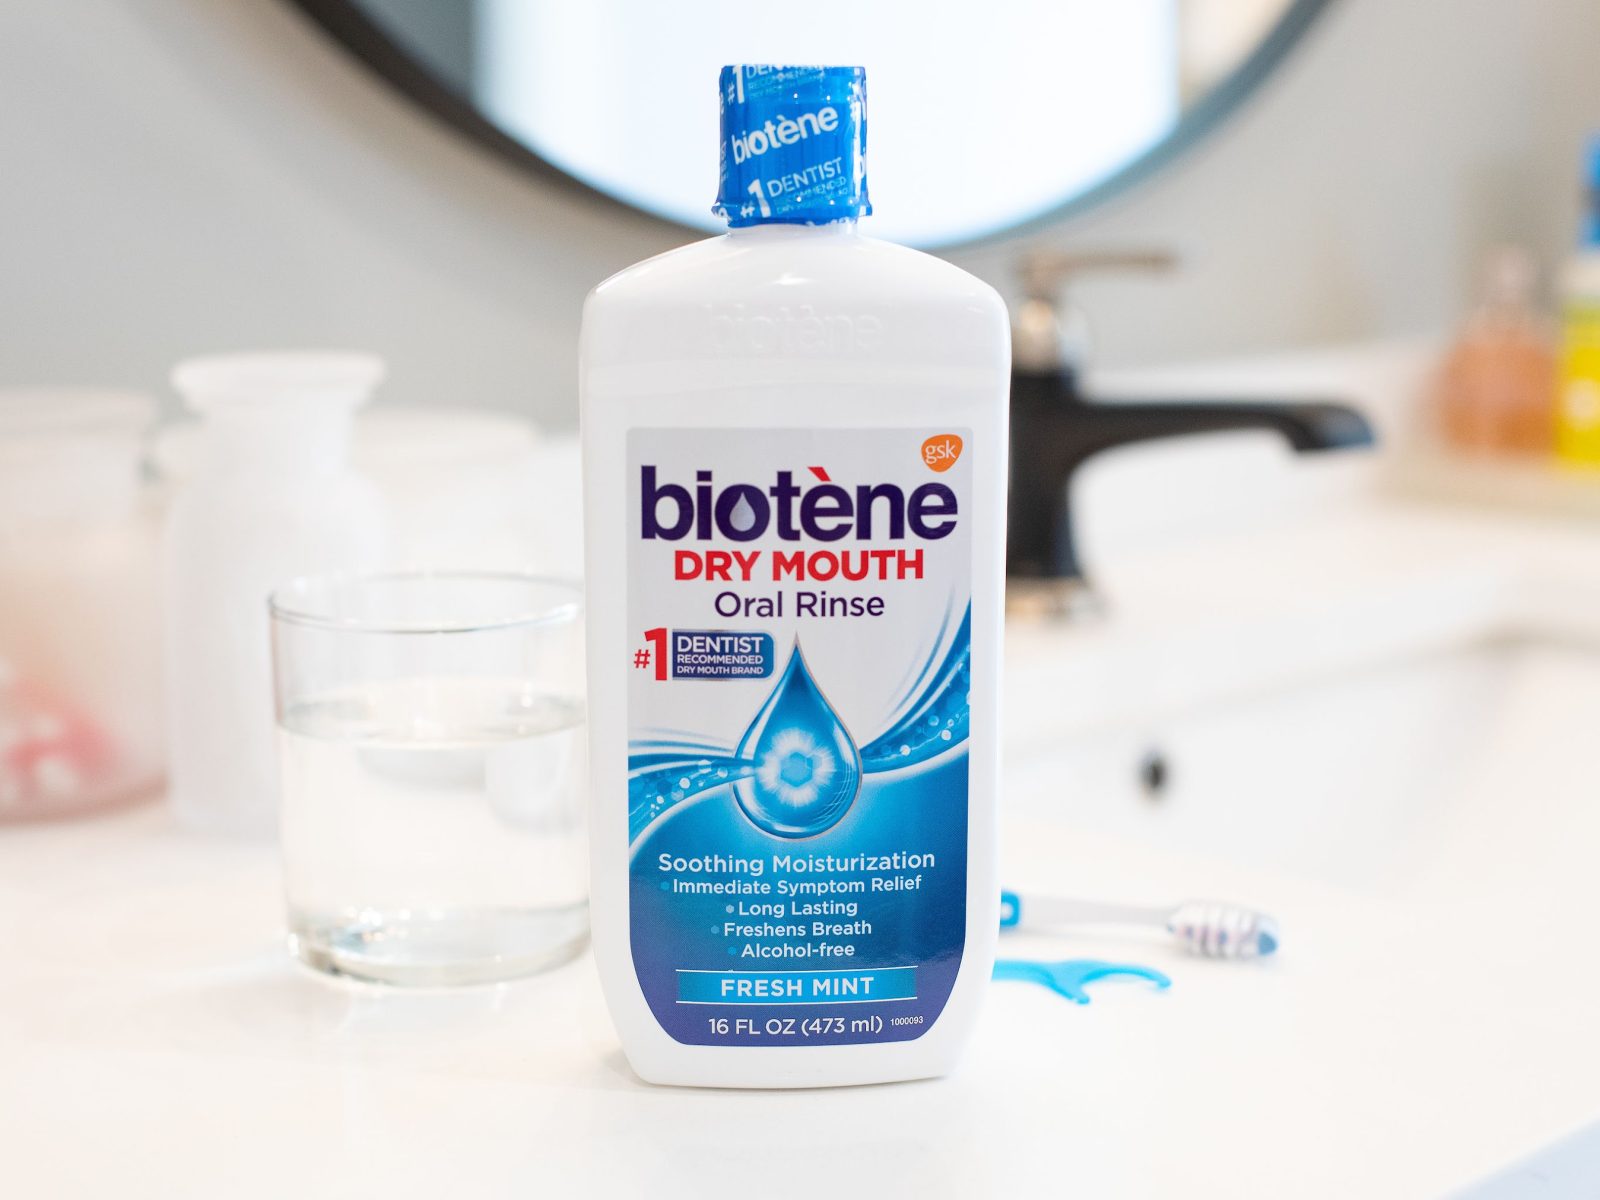 Biotene Products As Low As $3.49 At Kroger (Regular Price $6.49)